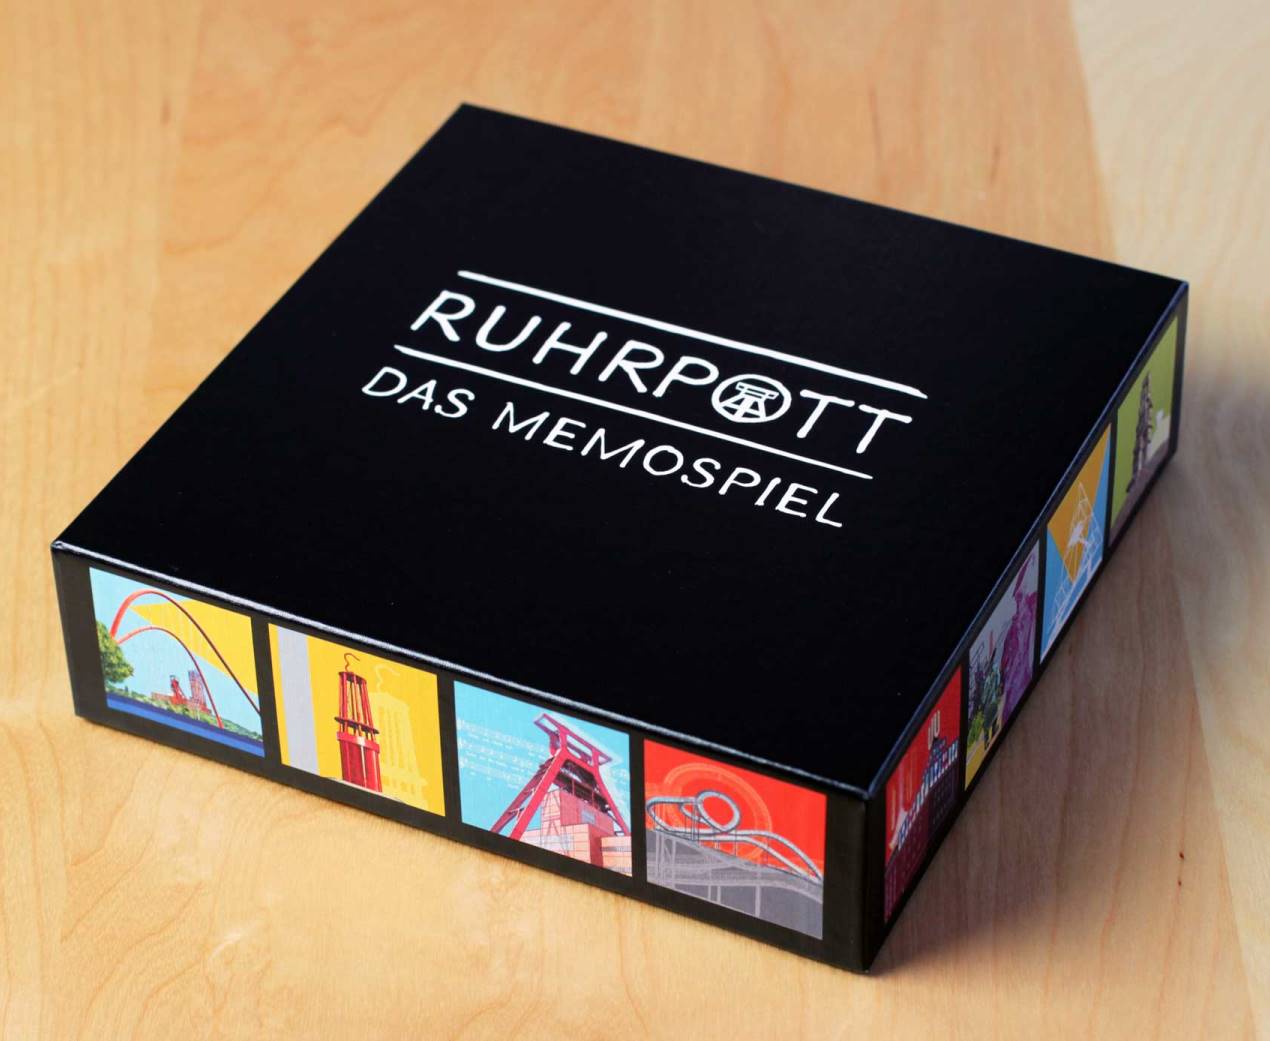 Memospiel – Ruhrpott